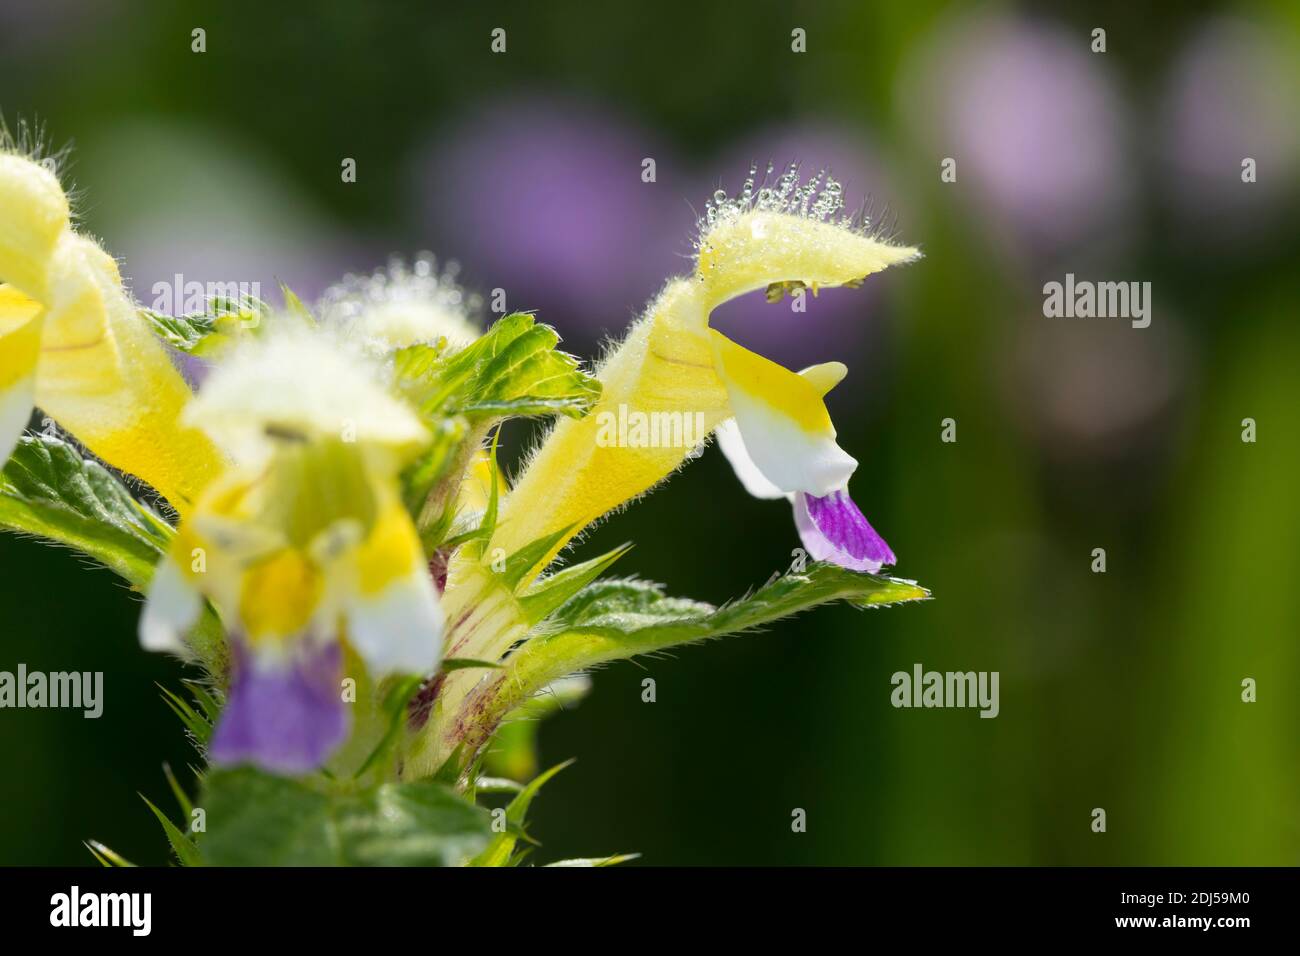 Bunter Hohlzahn, Hohlzahn, Hohl-Zahn, Galeopsis speciosa, Large-flowered Hemp Nettle, Large-flowered Hempnettle Stock Photo